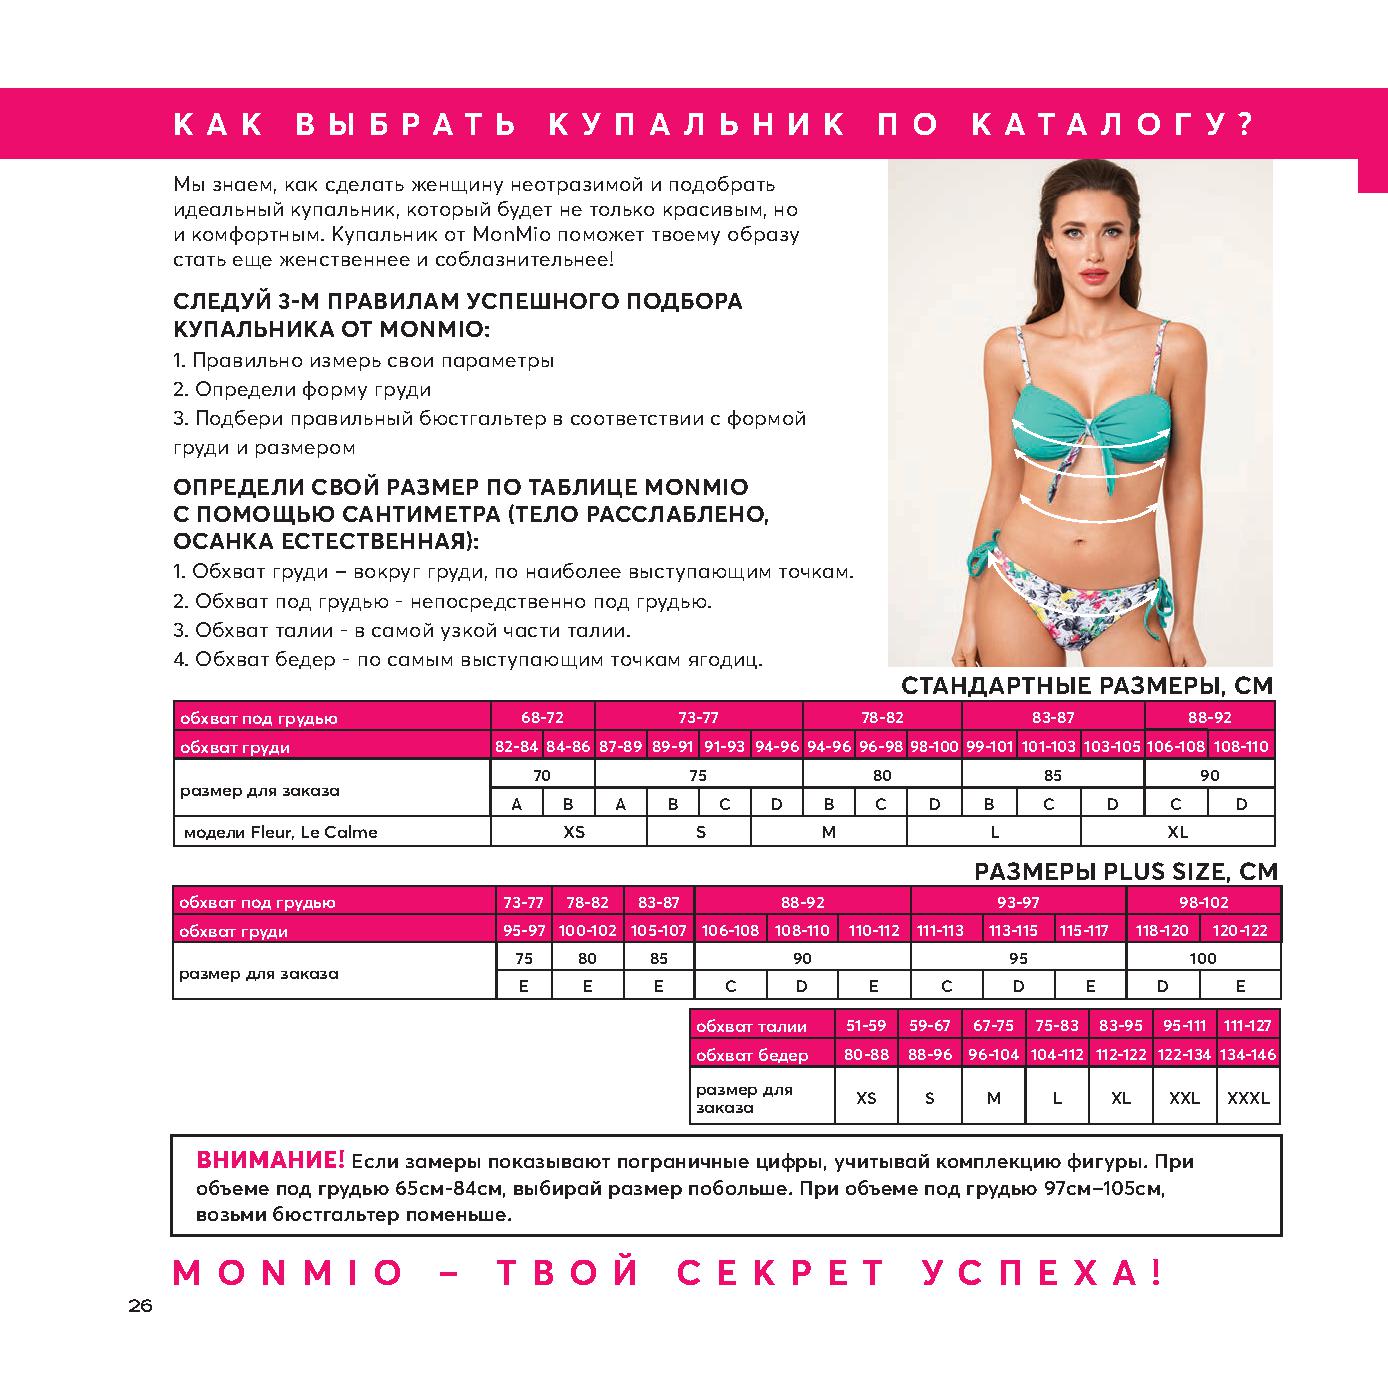 таблица размеров груди по россии фото 28